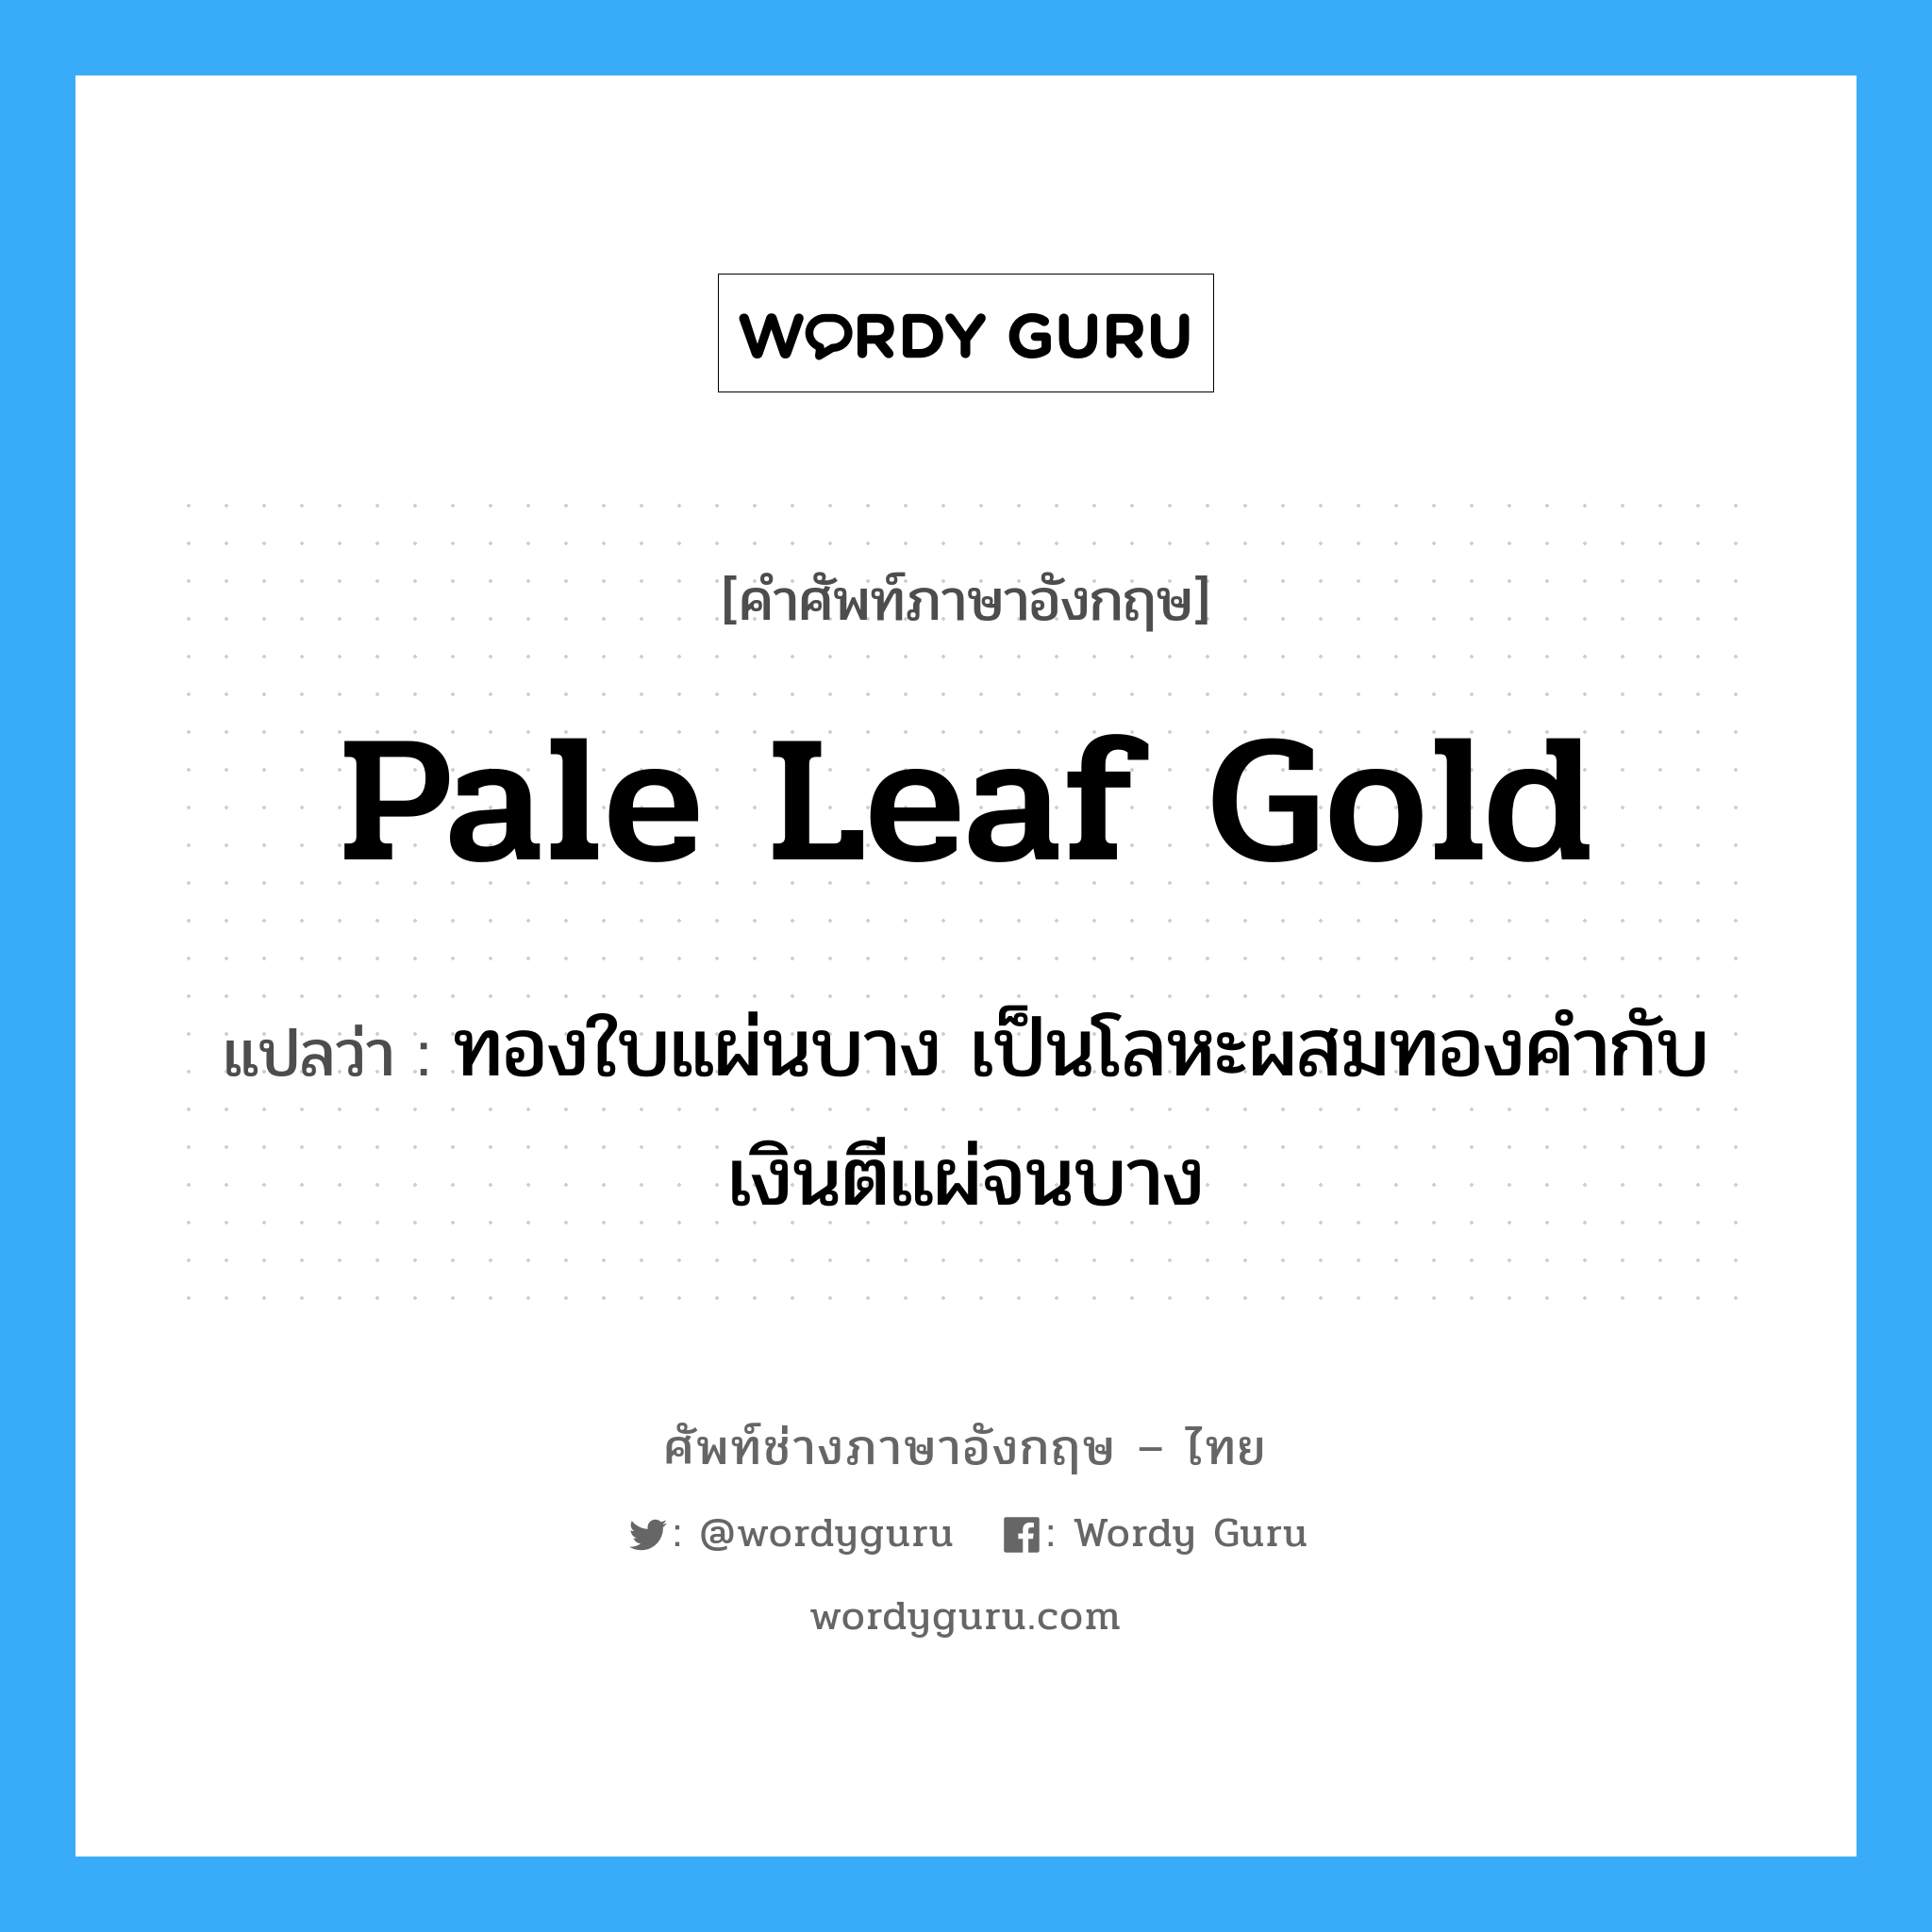 pale leaf gold แปลว่า?, คำศัพท์ช่างภาษาอังกฤษ - ไทย pale leaf gold คำศัพท์ภาษาอังกฤษ pale leaf gold แปลว่า ทองใบแผ่นบาง เป็นโลหะผสมทองคำกับเงินตีแผ่จนบาง